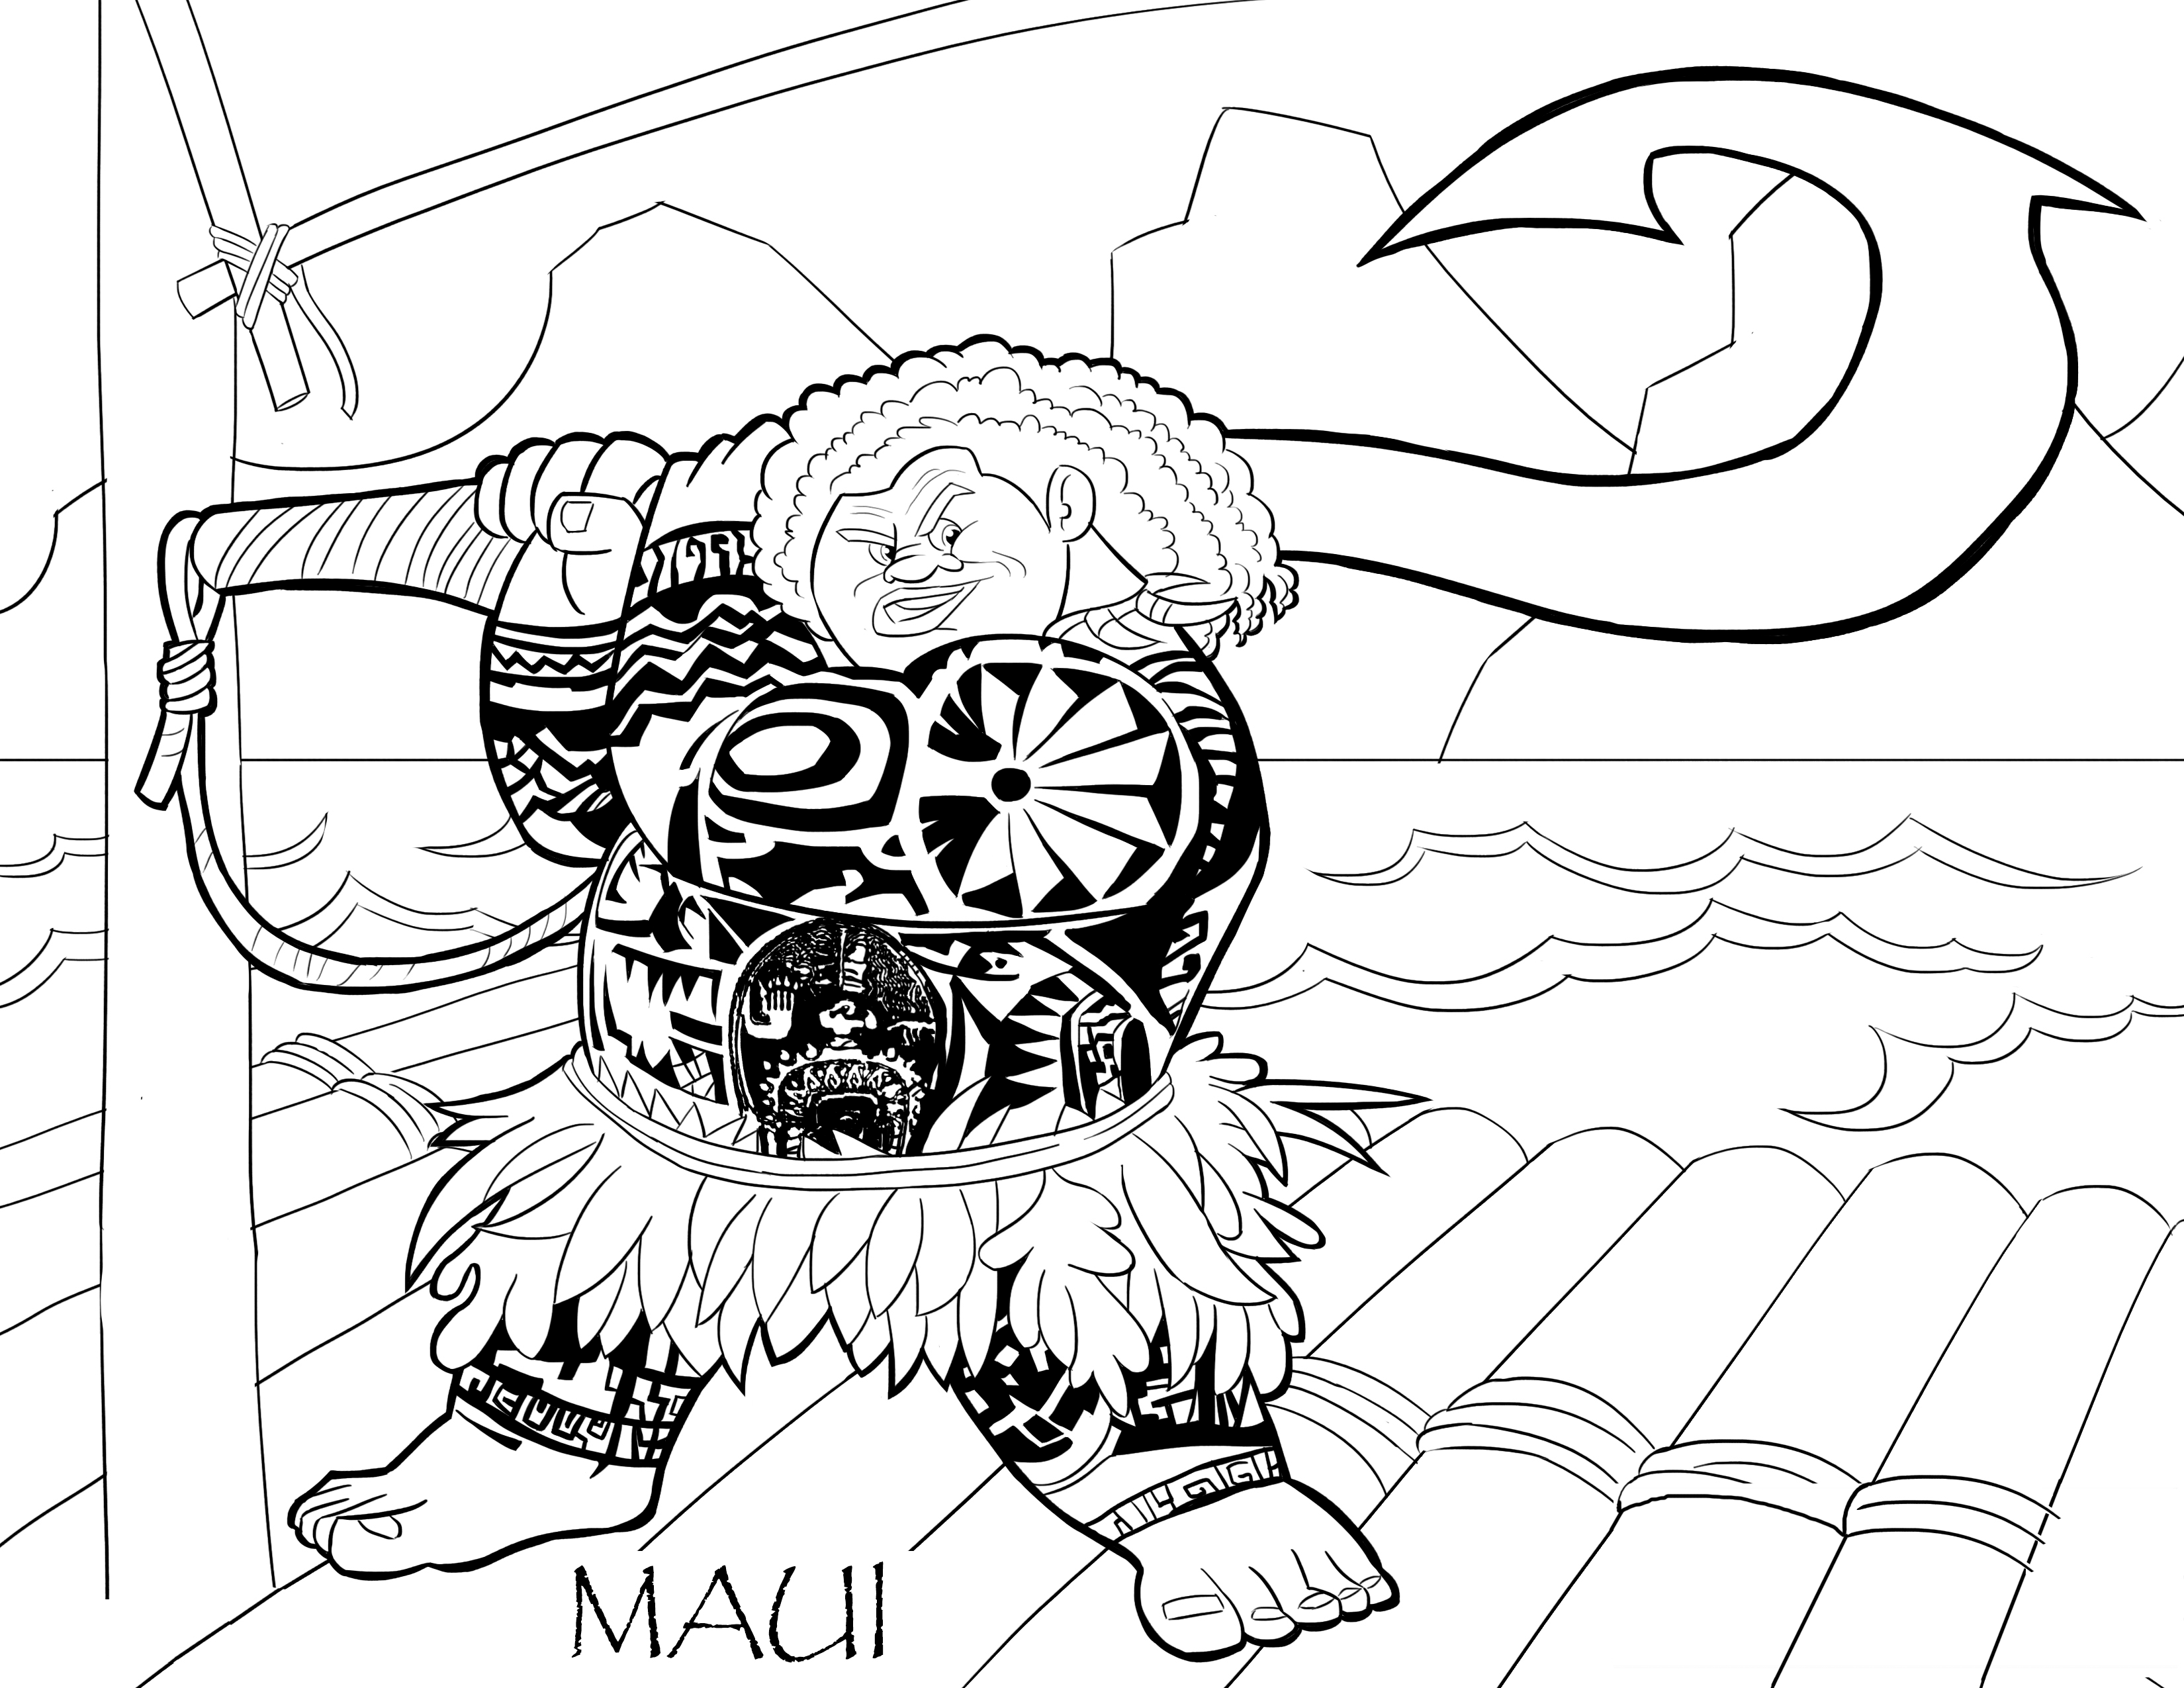 Dibujo para colorear del personaje Maui de la película de dibujos de Disney Moana Un mar de aventuras